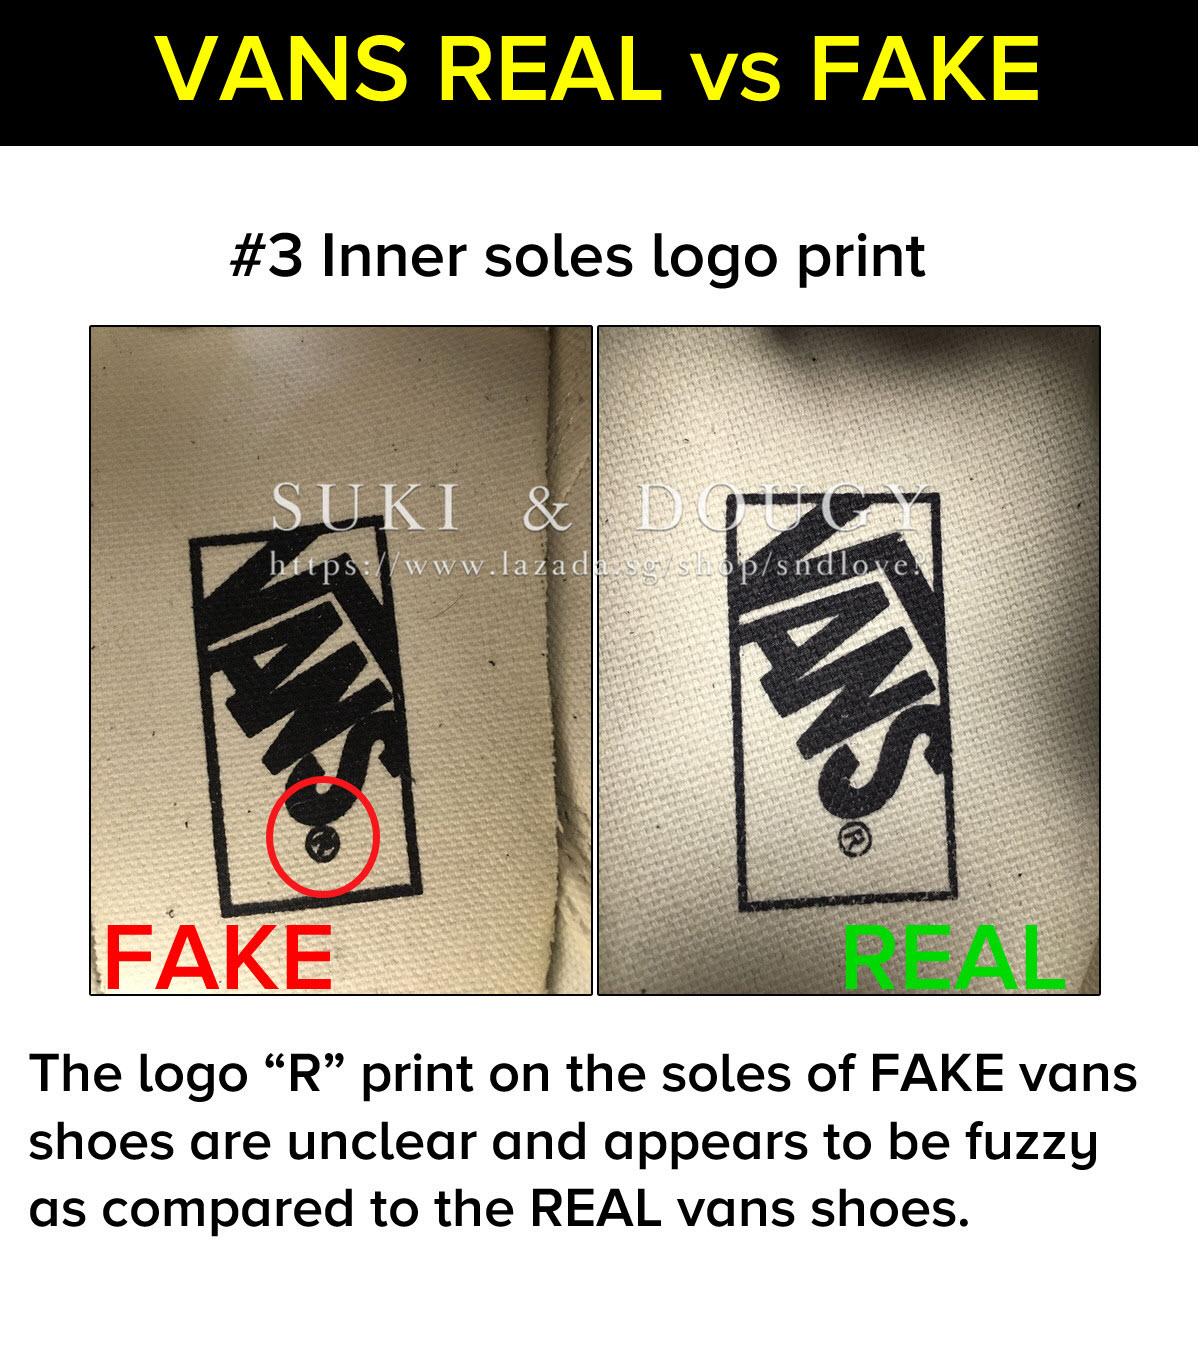 original vans shoes vs fake